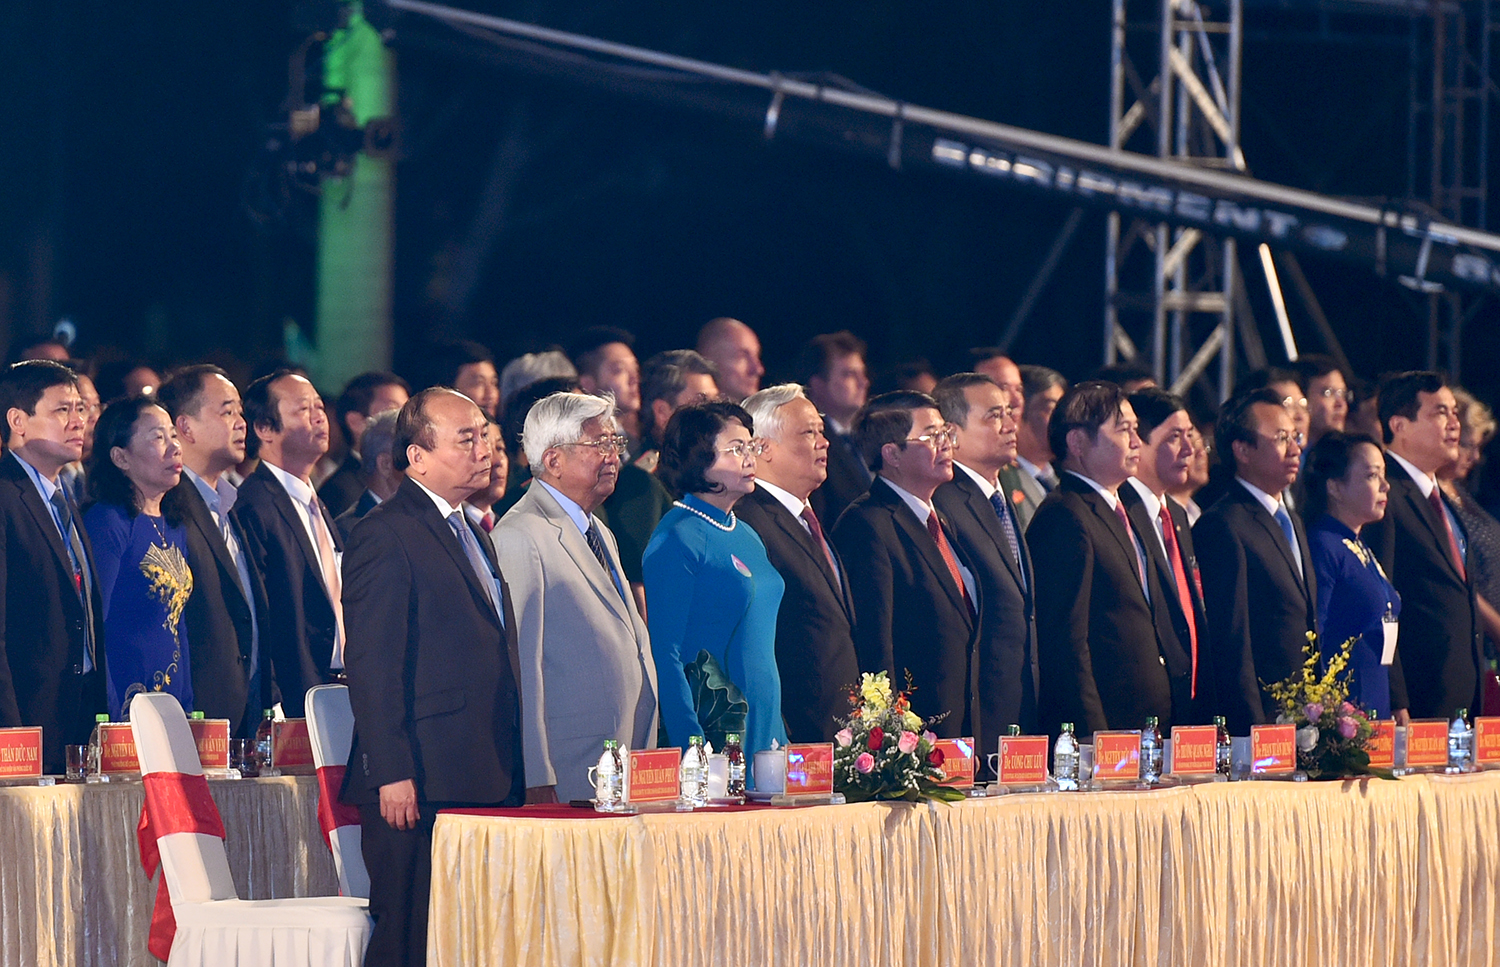  Thủ tướng Nguyễn Xuân Phúc cùng các đại biểu dự buổi lễ.  Ảnh: VGP